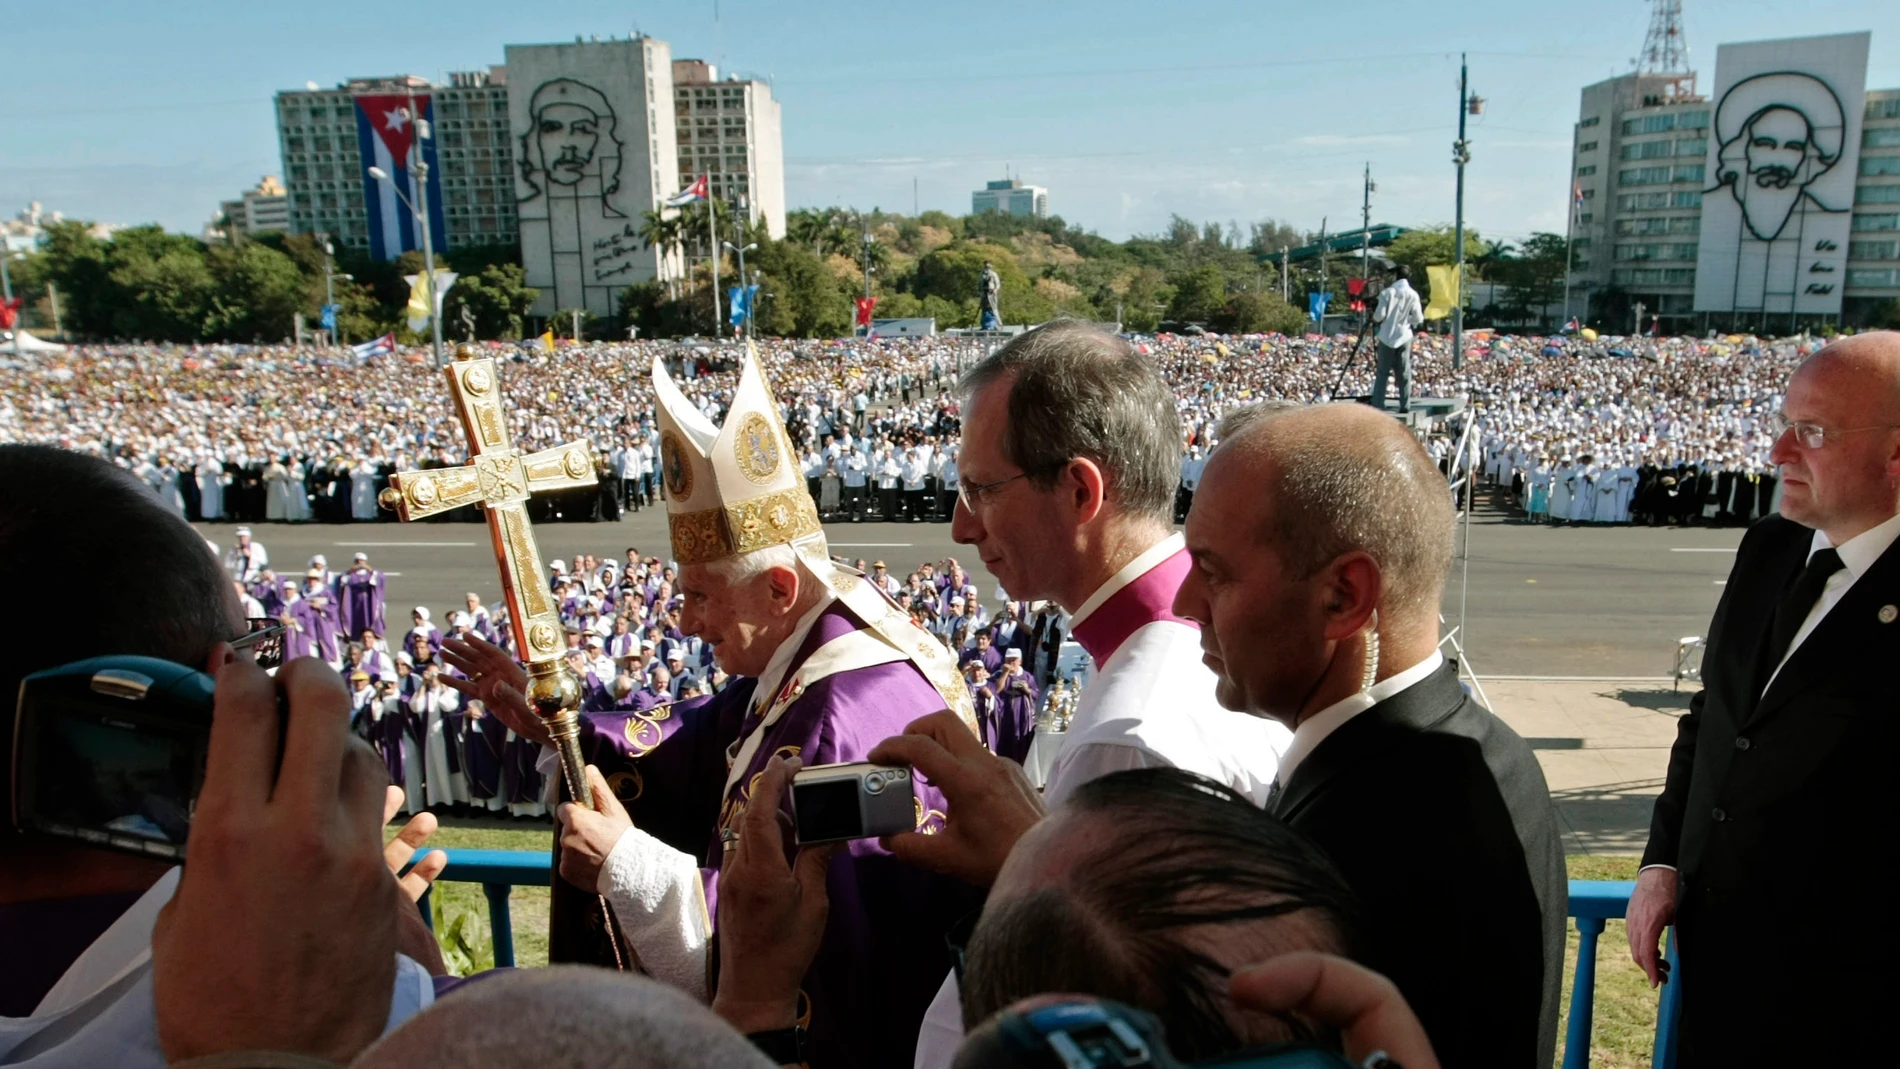 Benedicto XVI saluda a los fieles congregados en la Plaza de la Revolución de La Habana, durante su vista a Cuba en marzo de 2012